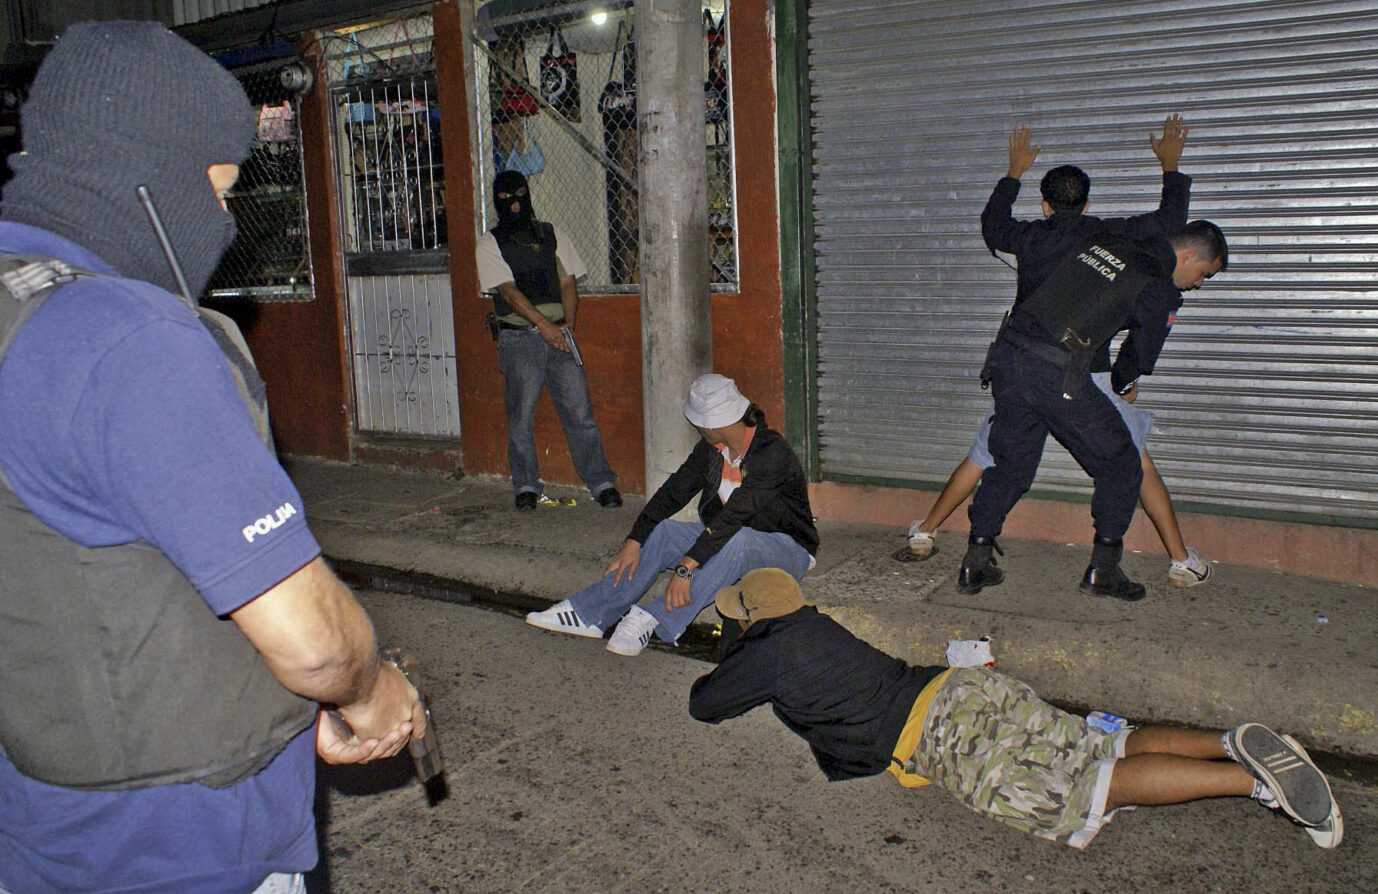 Angehörige einer Antidrogeneinheit nehmen in Costa Rica mehrere junge Verdächtige fest. Foto: picture alliance / dpa | COSTA RICA'S PUBLIC SECURITY POL